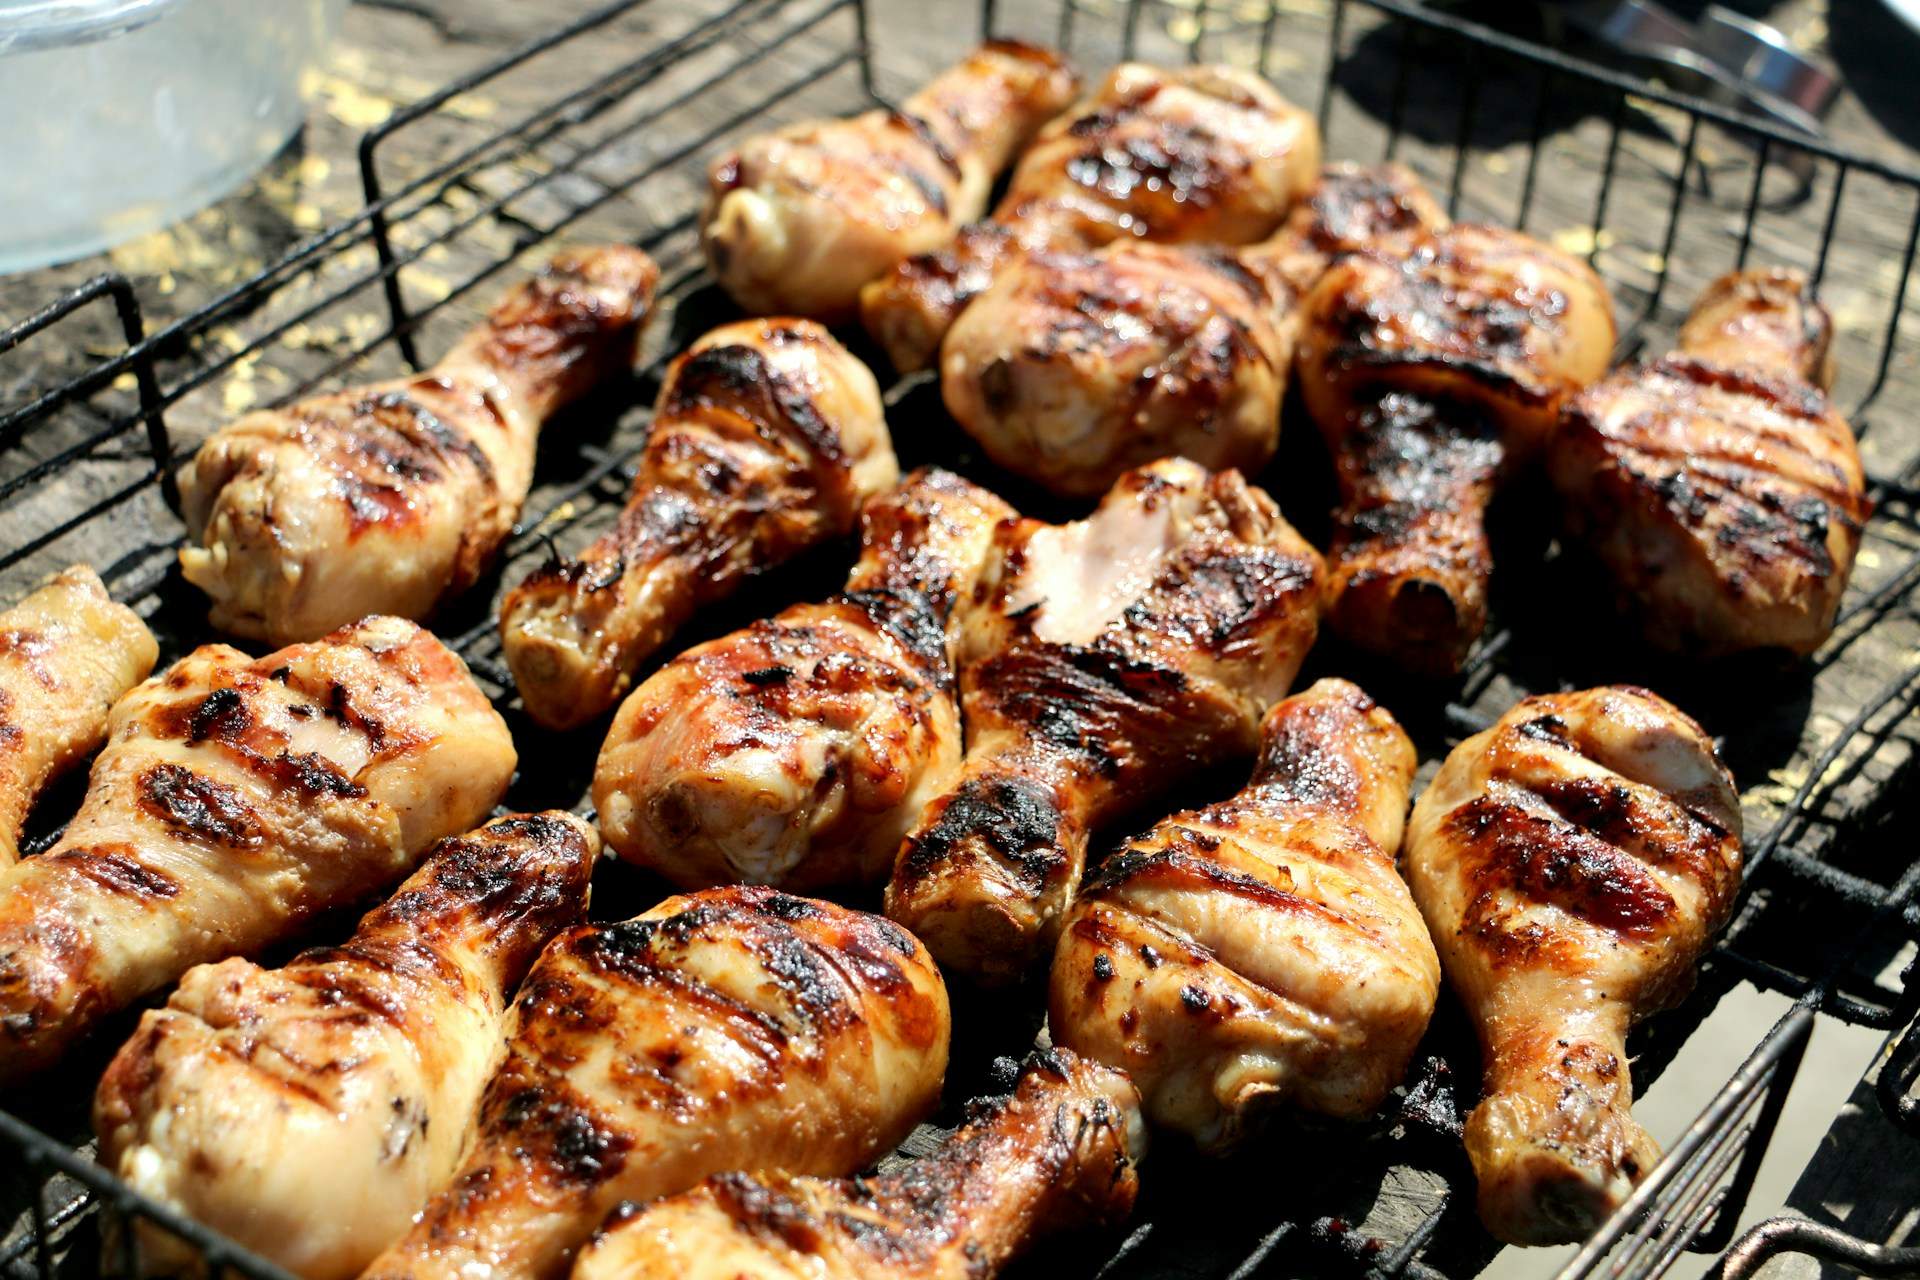 Cómo cocinar muslos de pollo: las recetas que no conoces y te van a cautivar